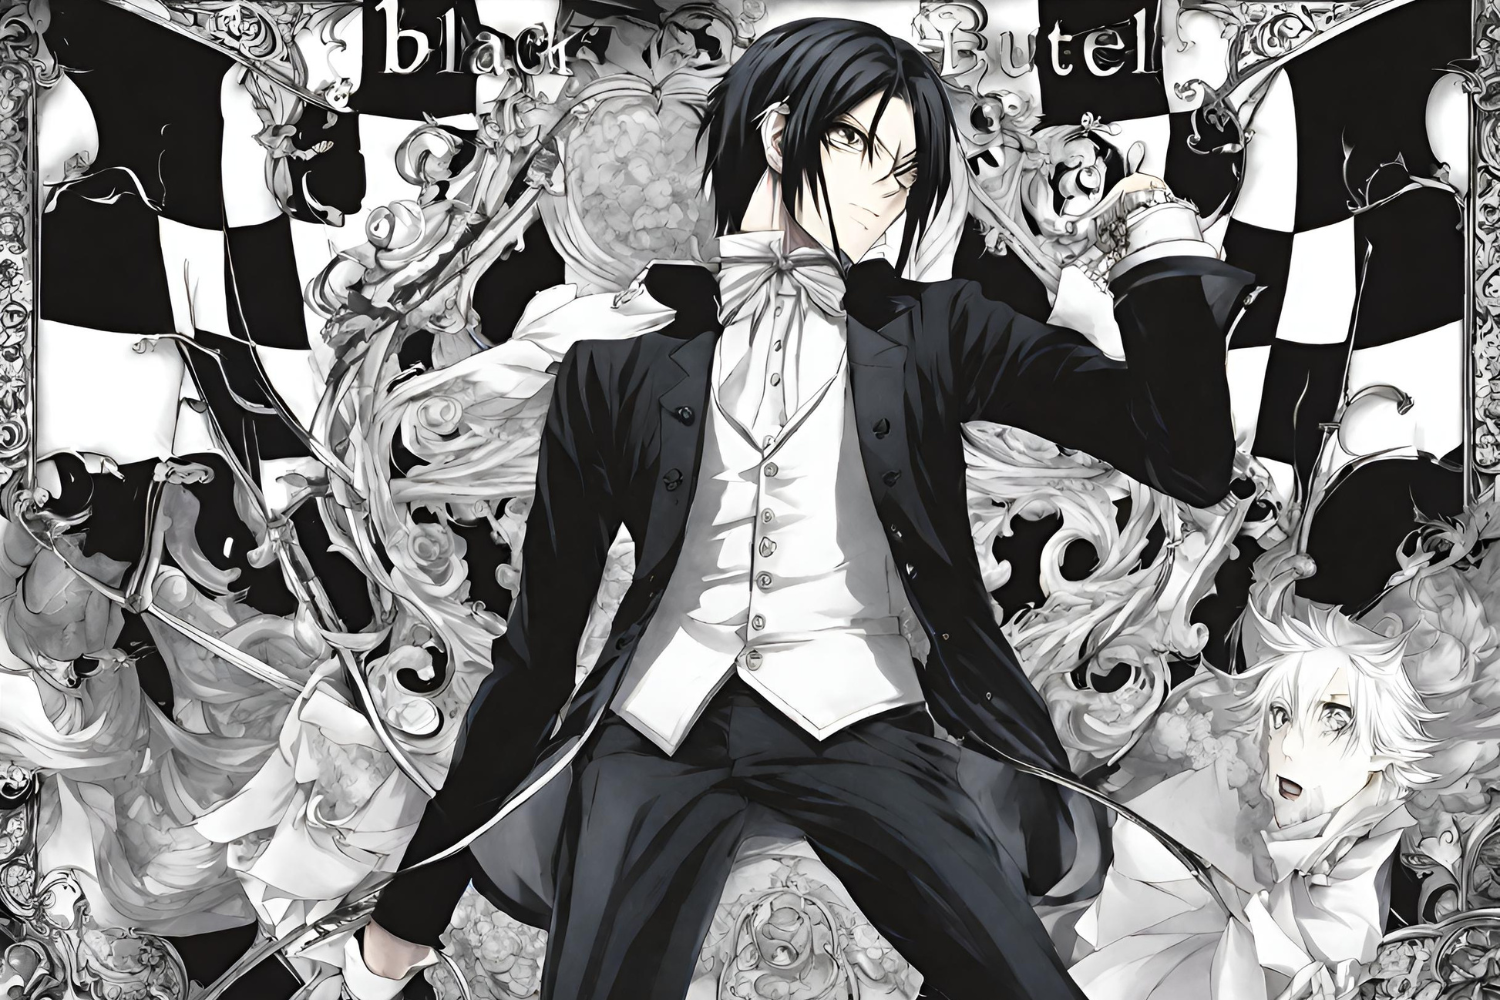 Black butler manga